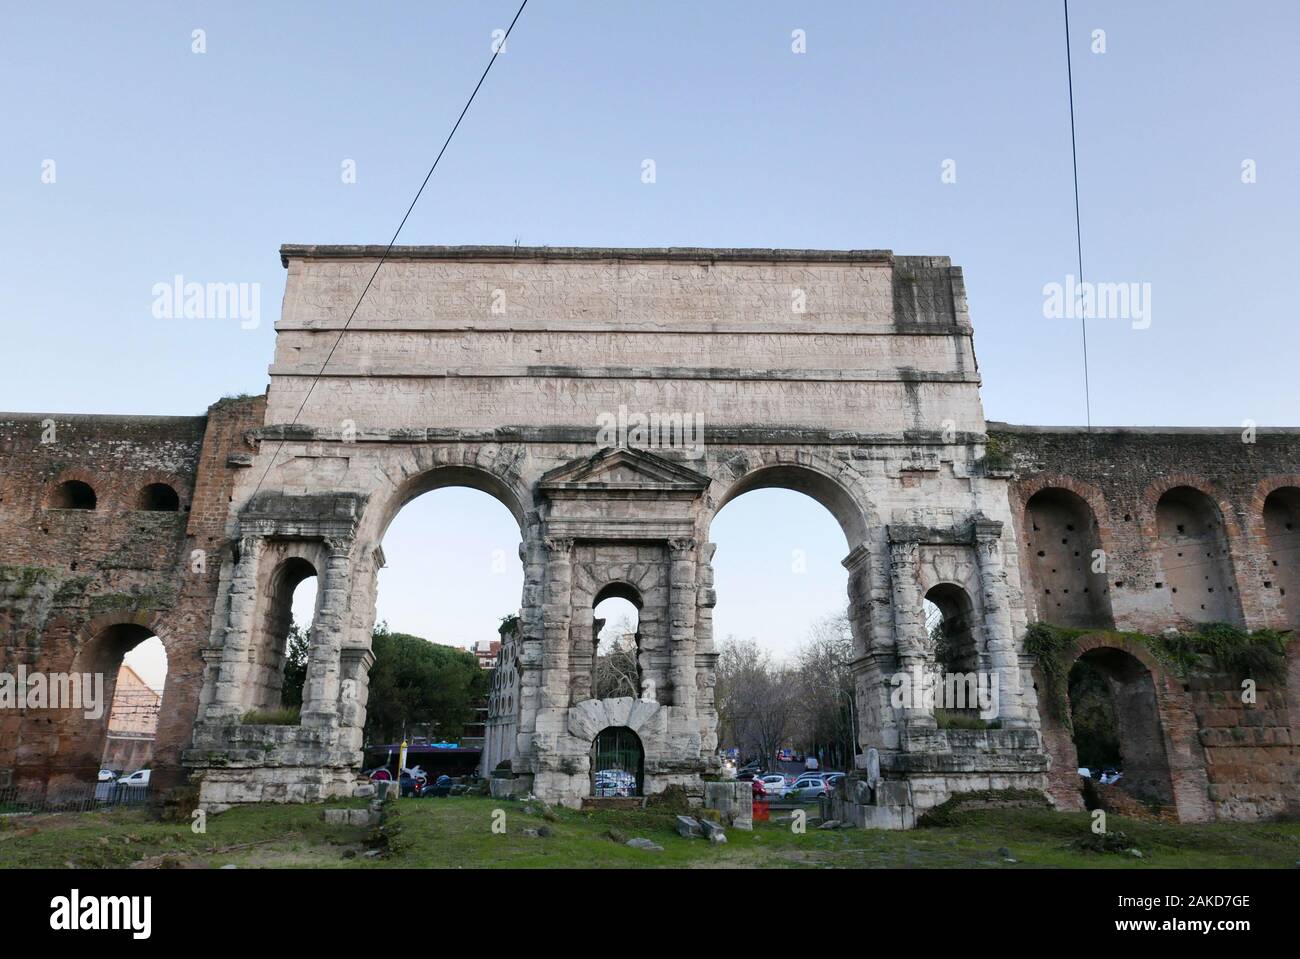 The Porta Maggiore or Porta Prenestina ancient ì 3rd-century Aurelian Walls of Rome Stock Photo